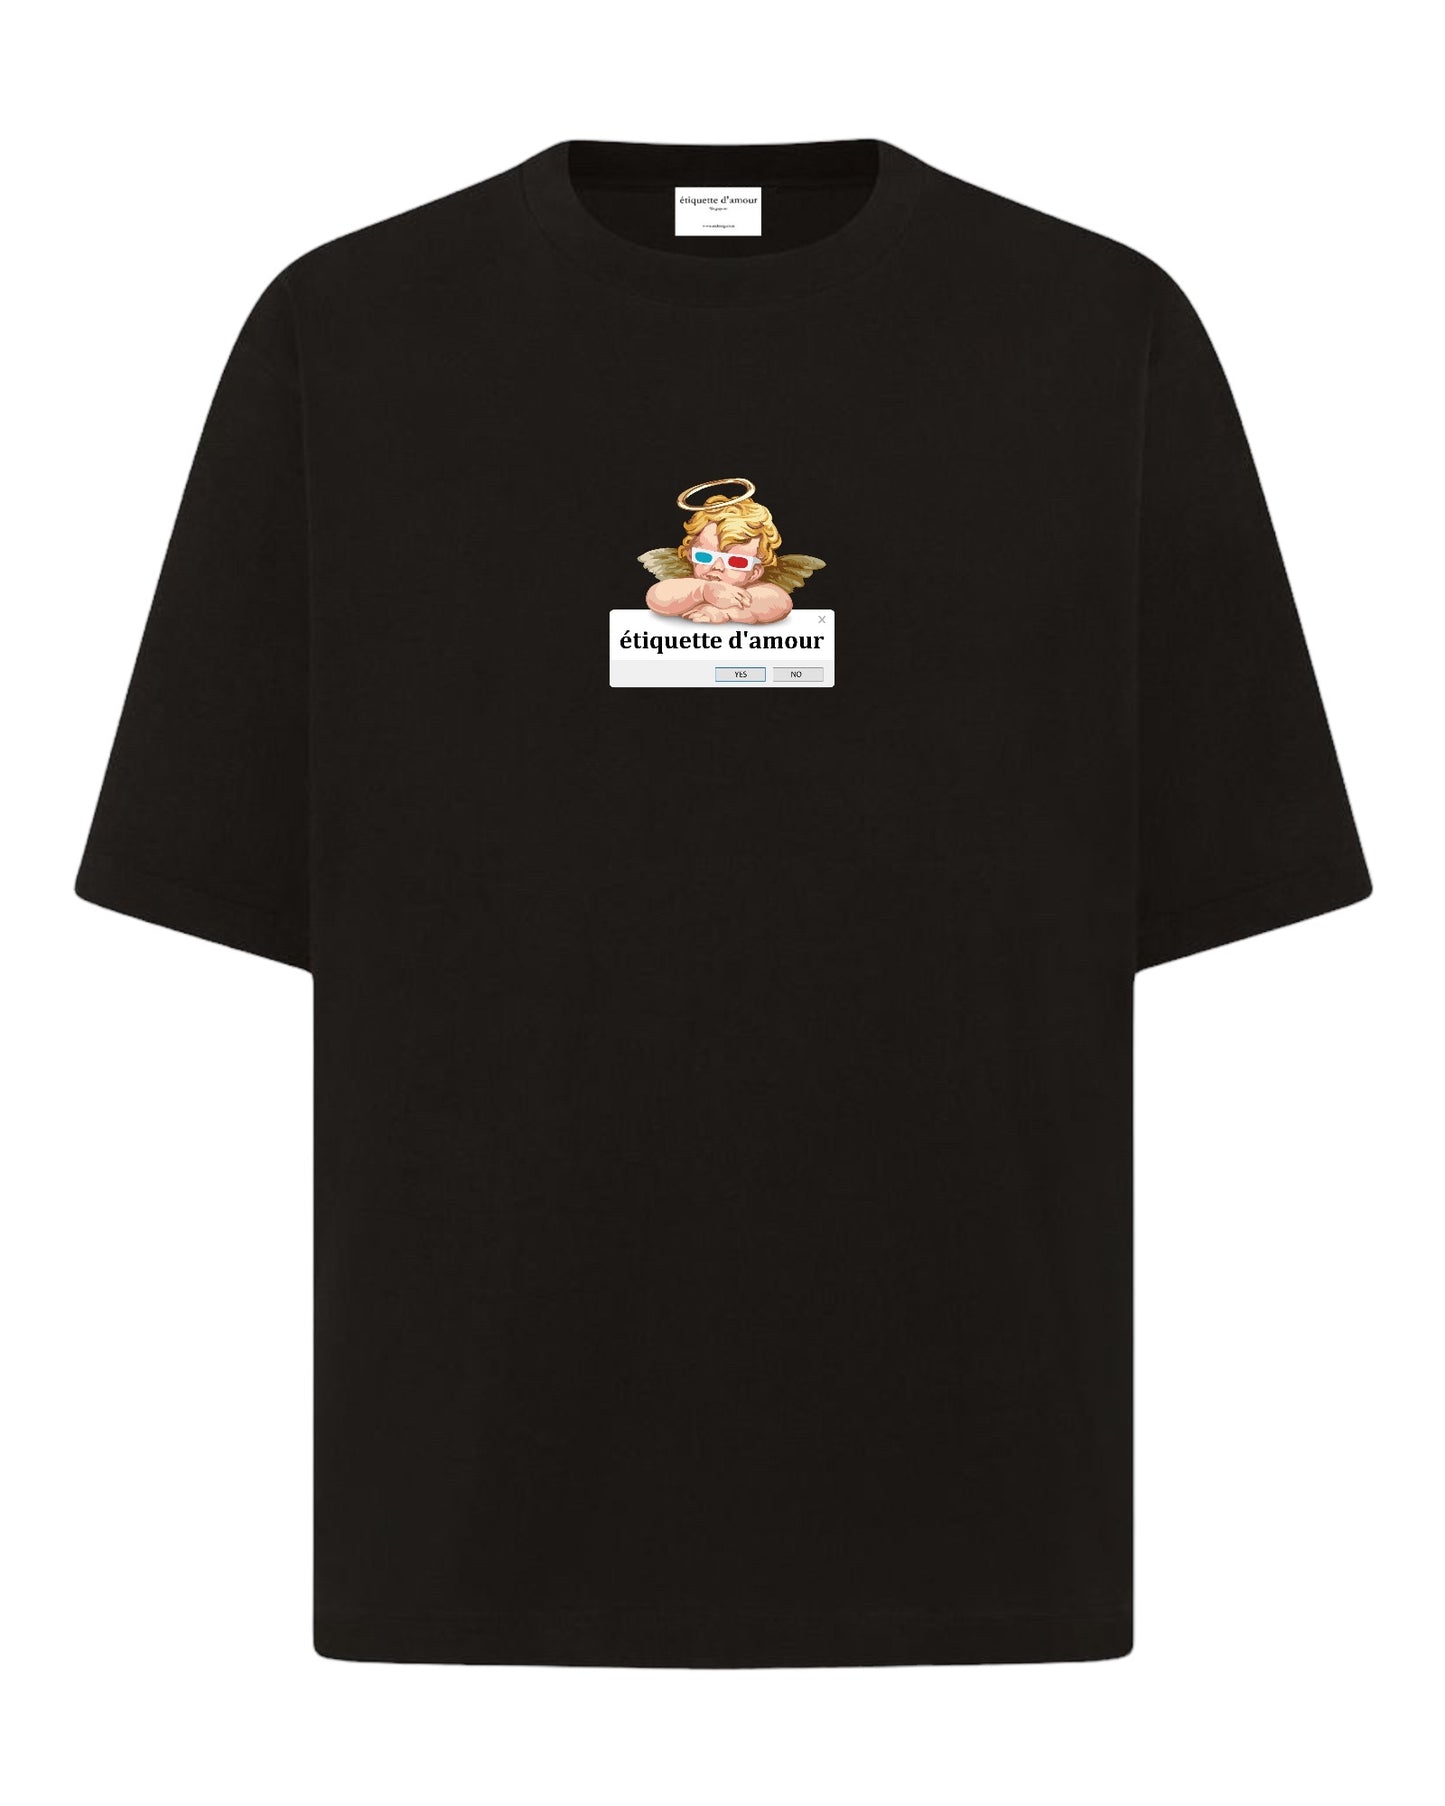 XLuxe T-Shirt #0017